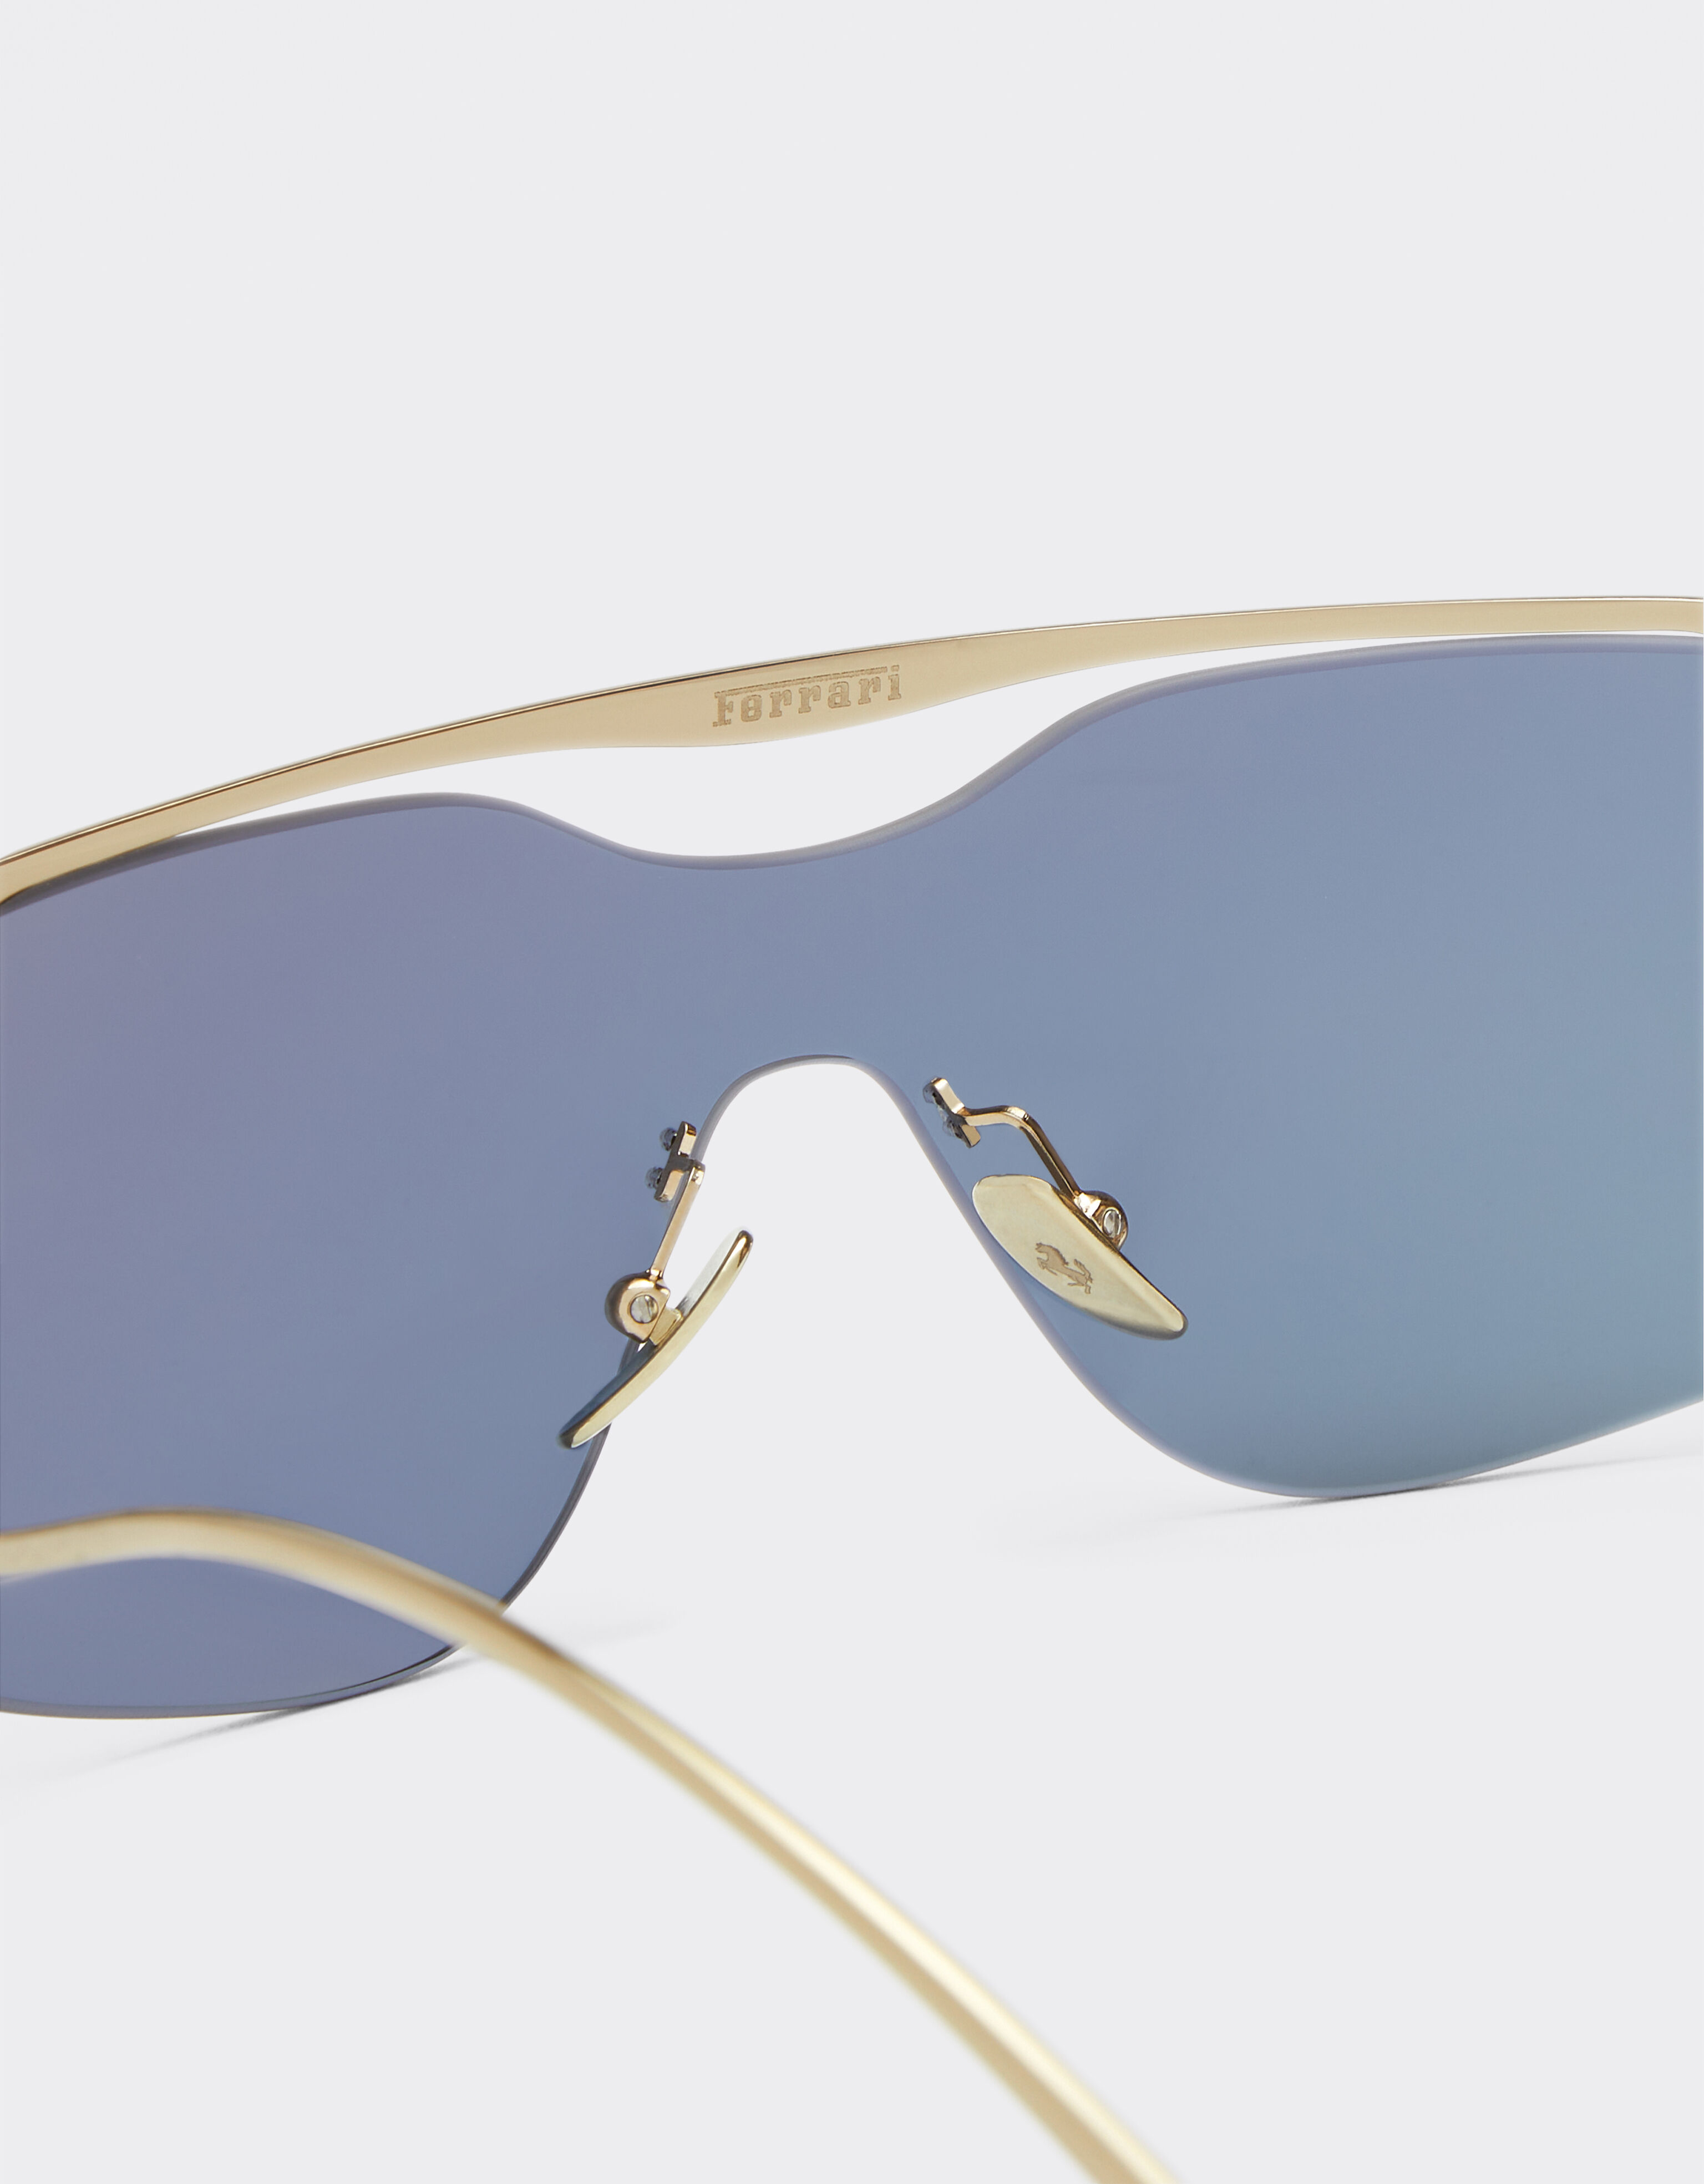 Ferrari Ferrari Sonnenbrille aus goldenem Metall mit gold-blau verspiegelten Gläsern Gold F1200f